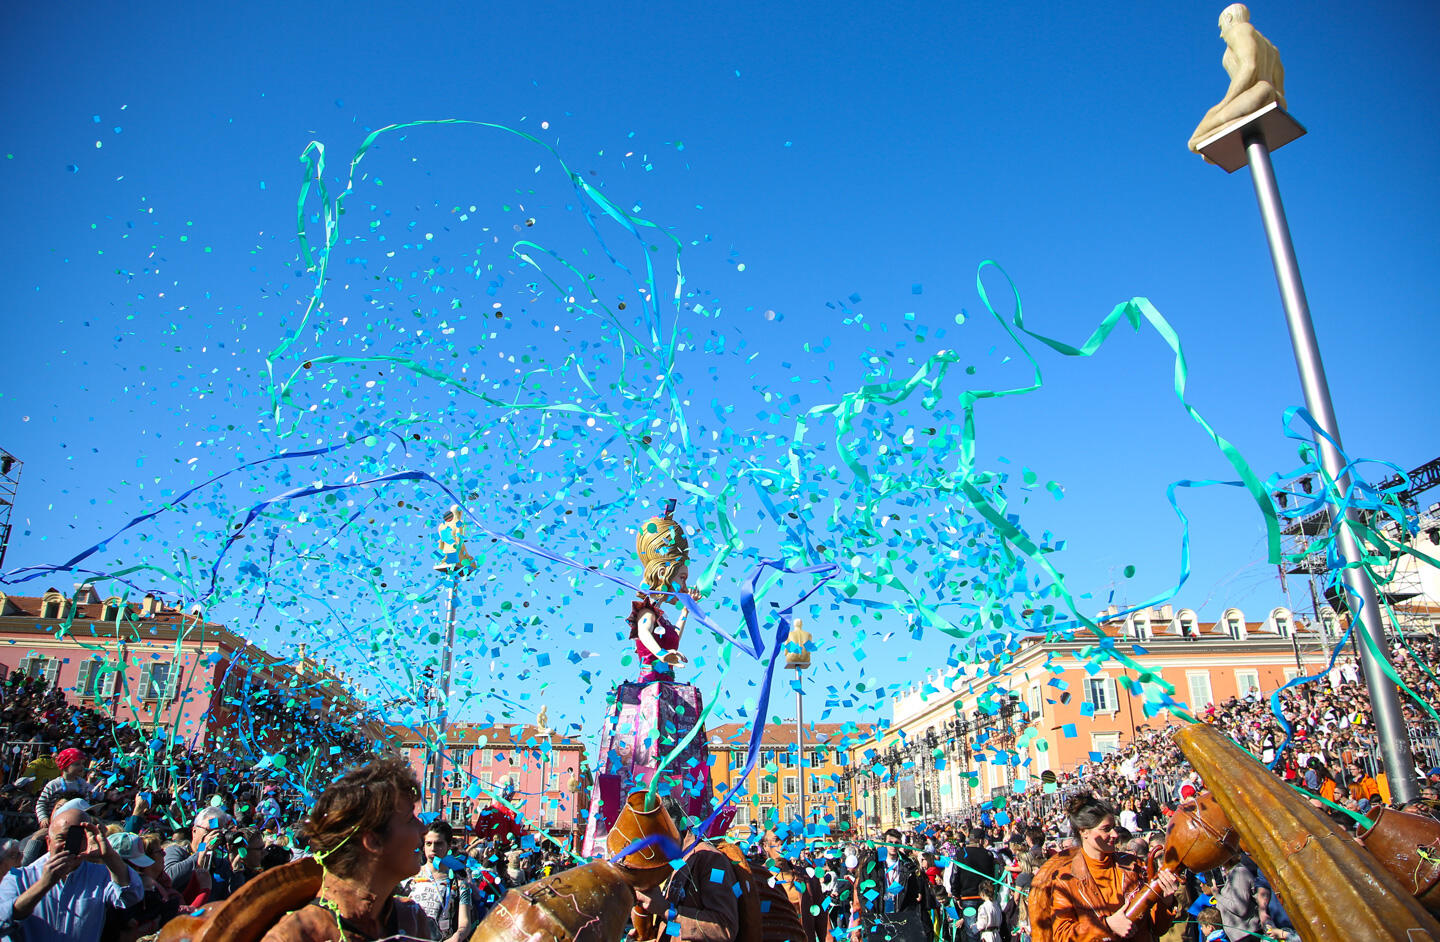 Célébration animée du Carnaval de Nice avec des confettis bleu turquoise volant dans l'air, une foule enthousiaste et des sculptures de carnaval colorées sous le ciel bleu.